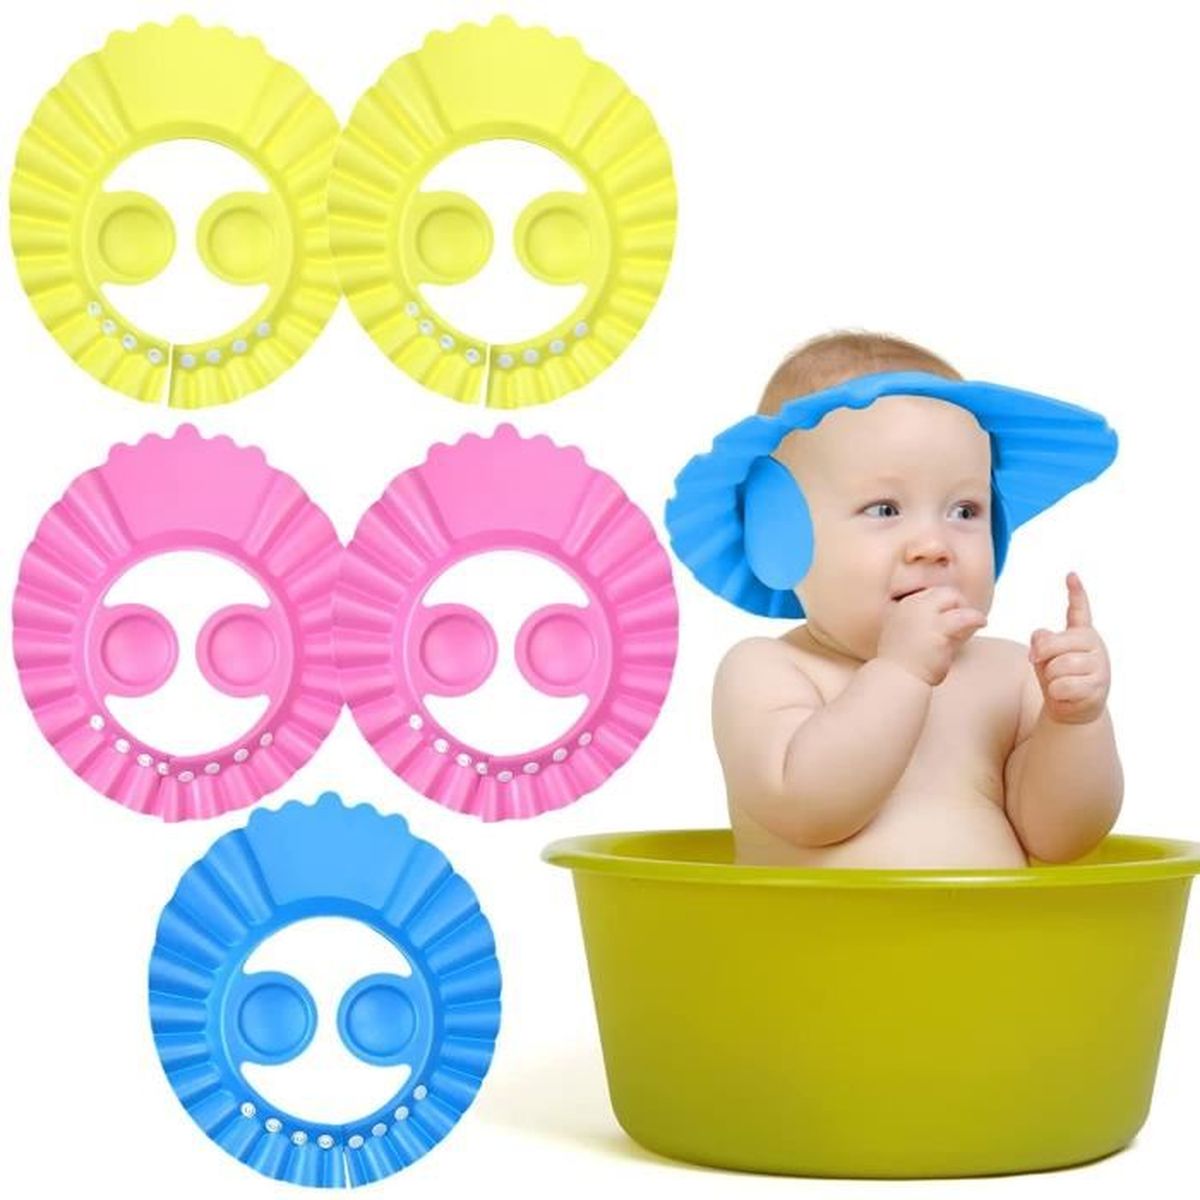 Bonnet de douche pour bébé Bonnet de bain à couronne réglable en silicone souple pour laver les cheveux Empêcher l'eau et la mousse de pénétrer dans les oreilles et les yeux des bébés en bas âge 